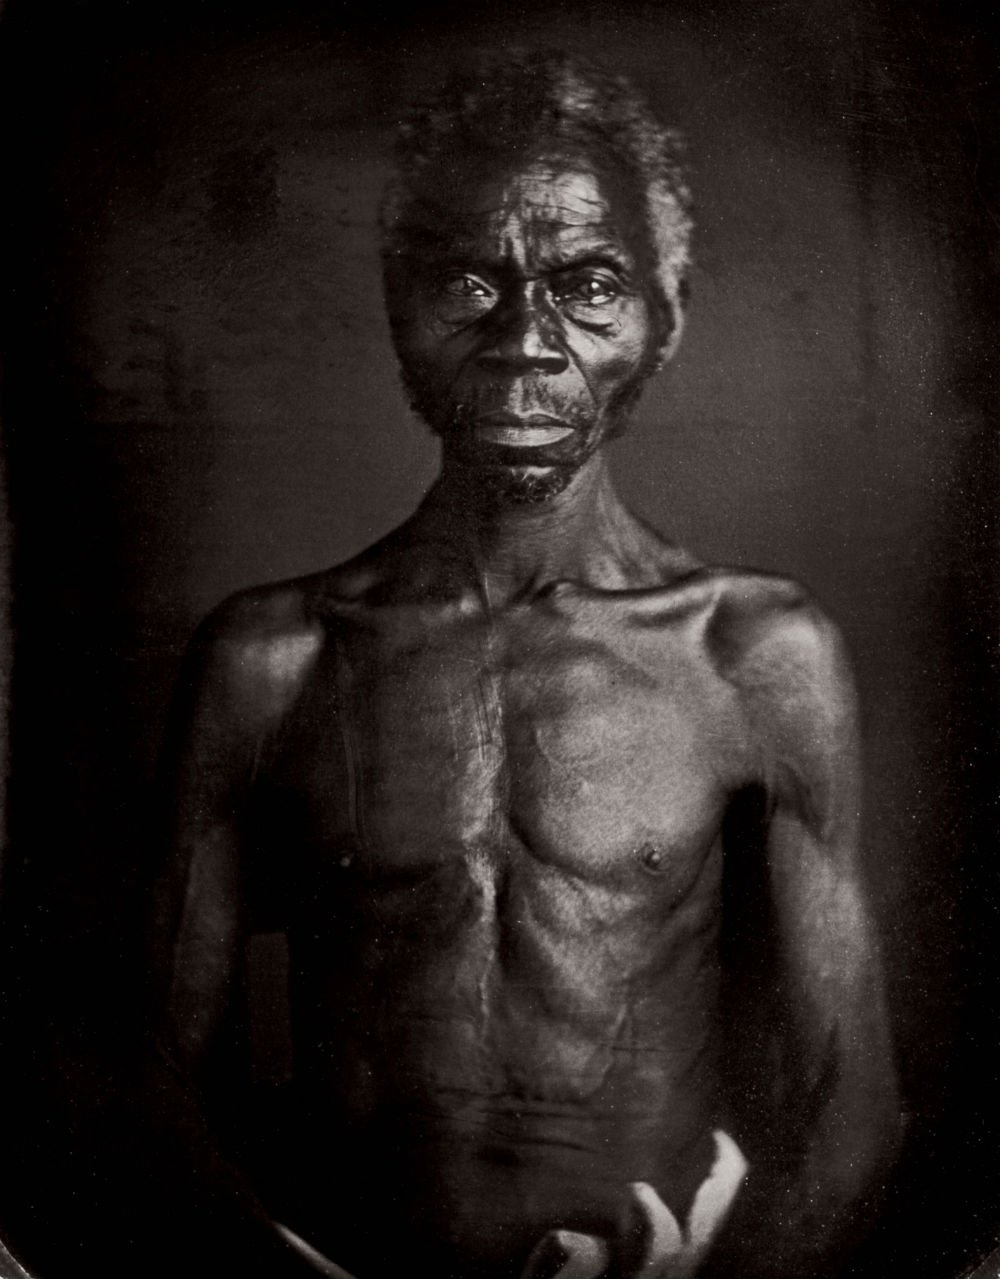 Histoire De L Esclavage Une Serie Documentaire D Une Profondeur Inedite Jeune Afrique